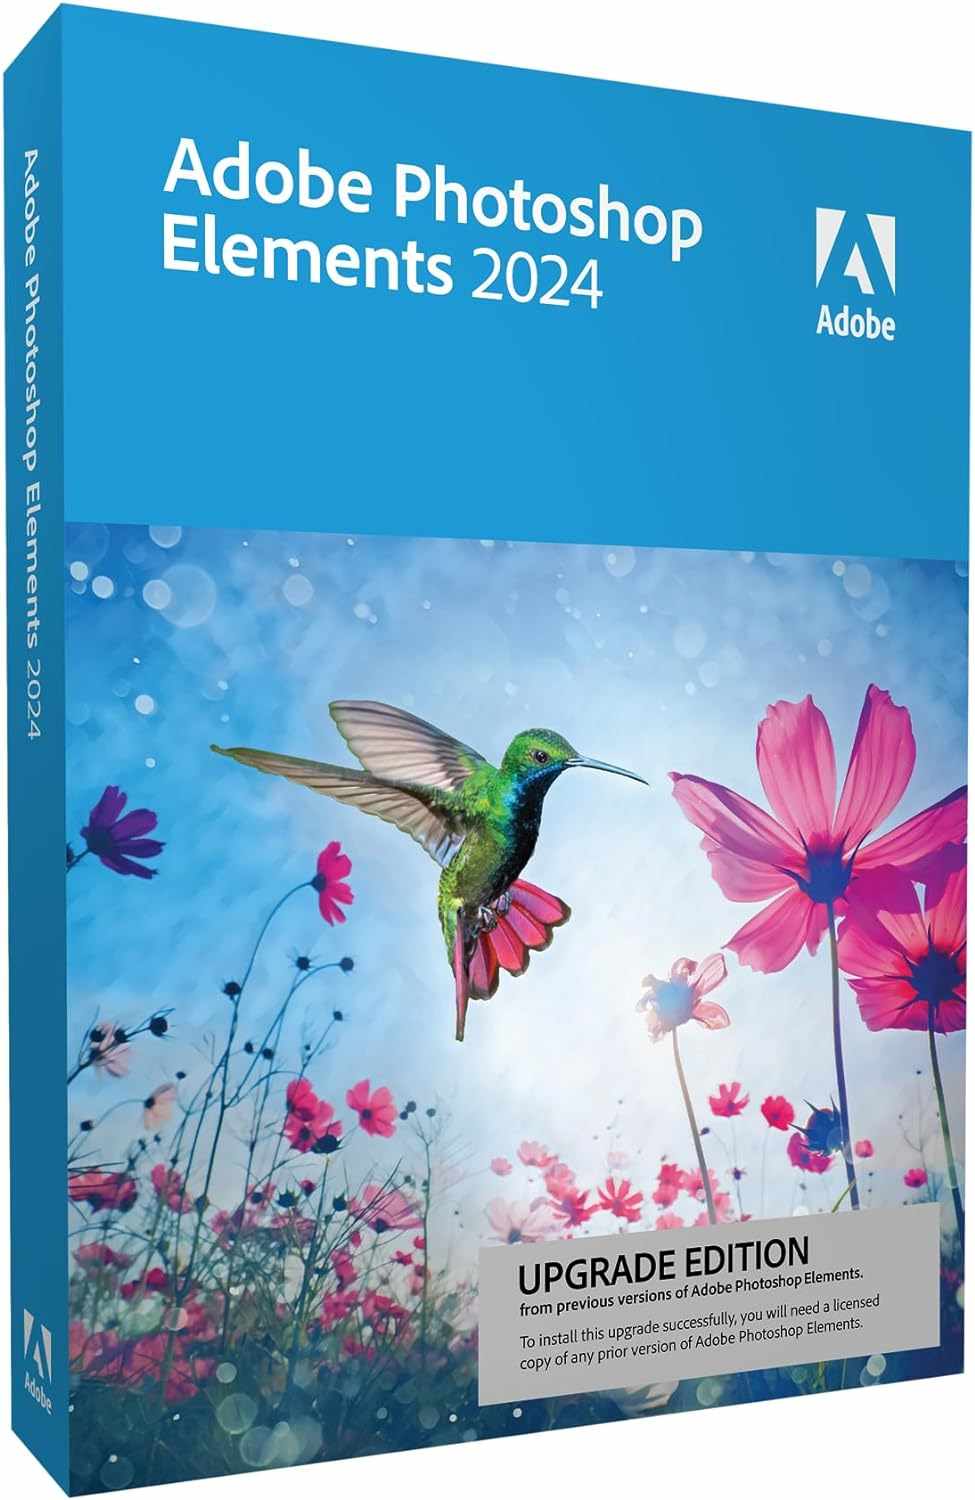 Adobe Photoshop Elements 2024 MP ENG UPG BOX0 